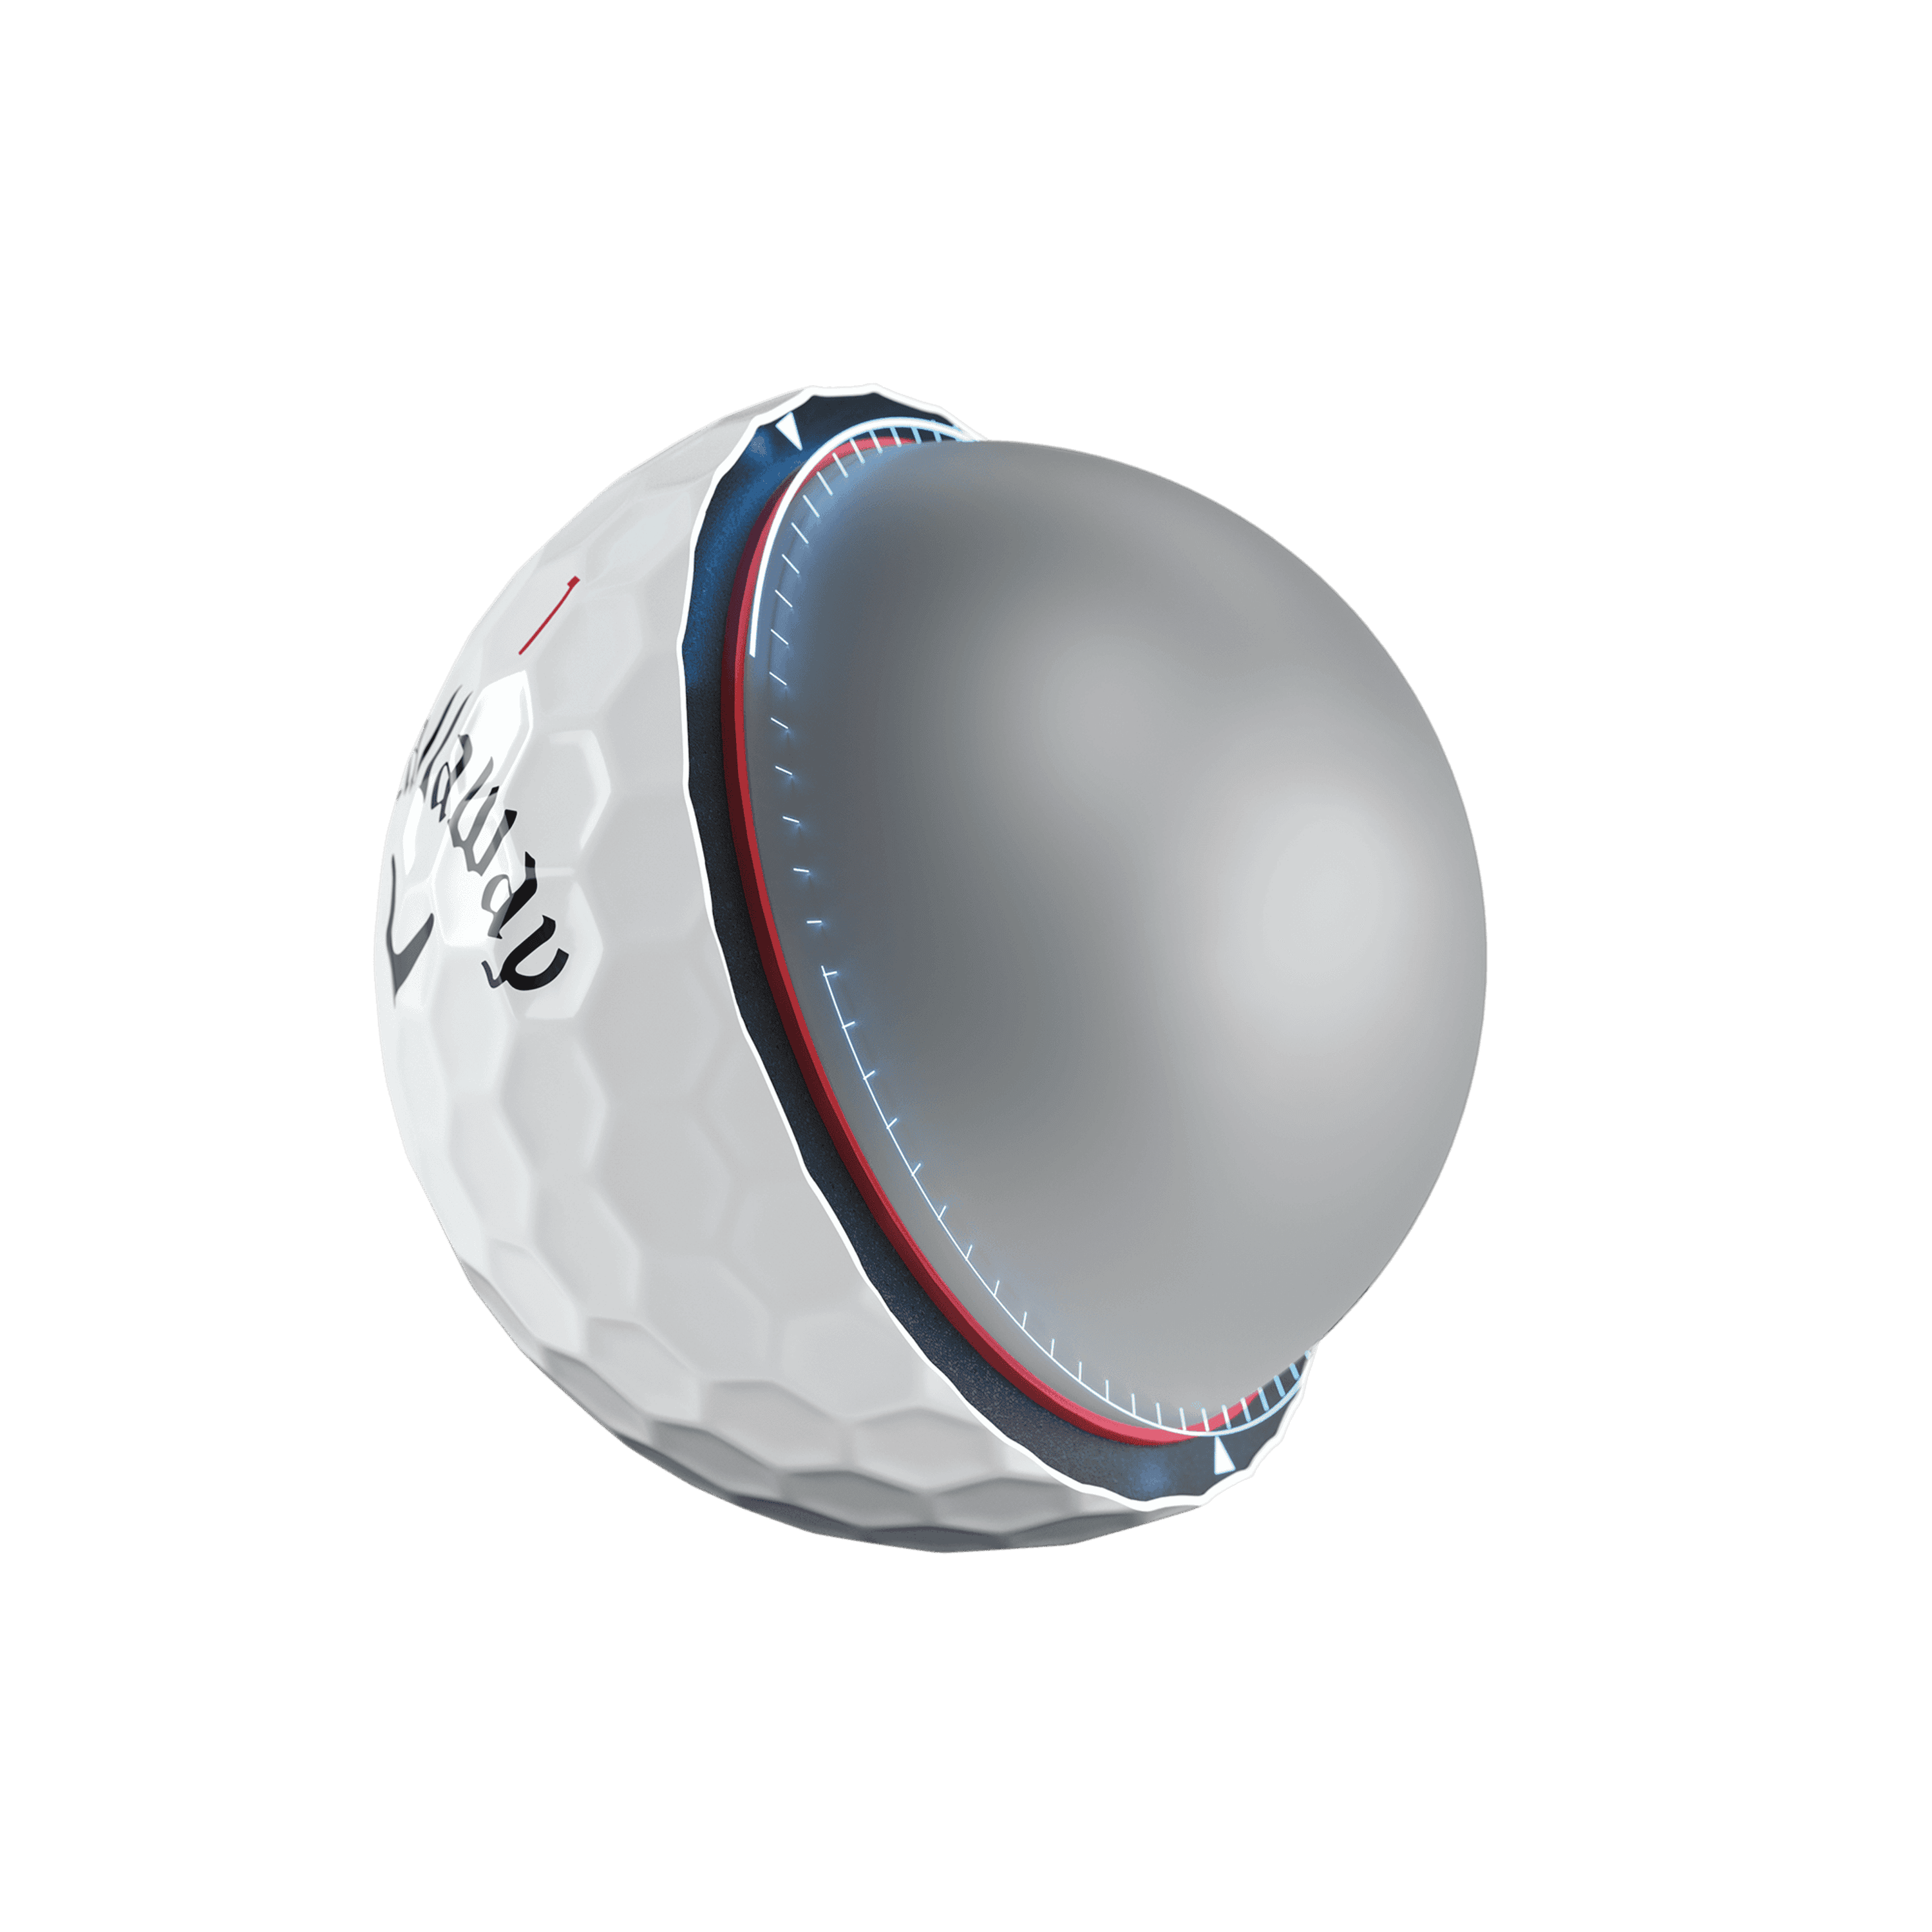 Callaway Chrome Soft X LS Golf Balls Technology